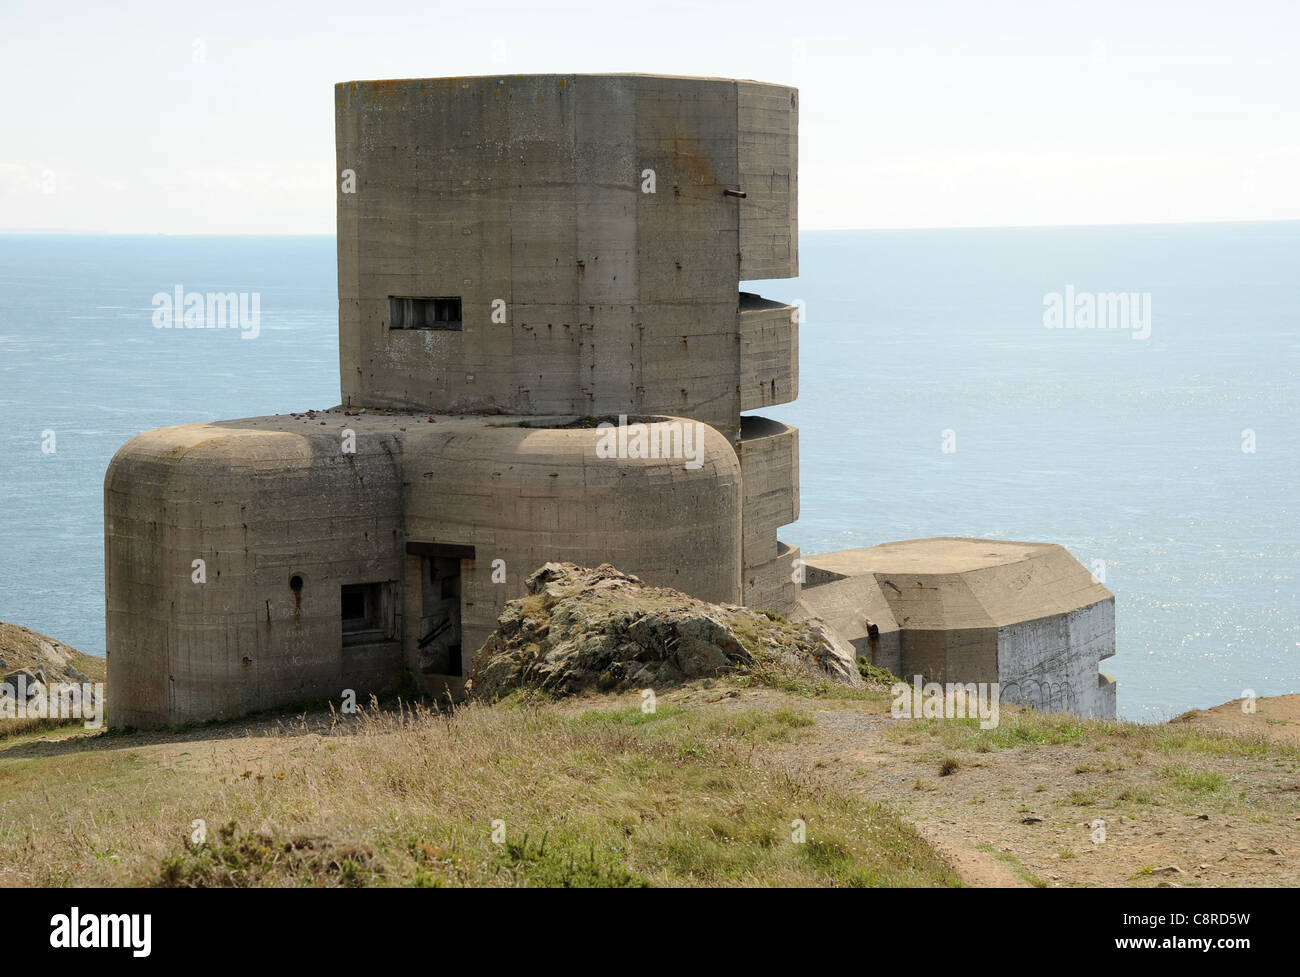 Il tedesco MP4 'L'angolo' artiglieria torre di osservazione, Guernsey, Isole del Canale. Foto Stock